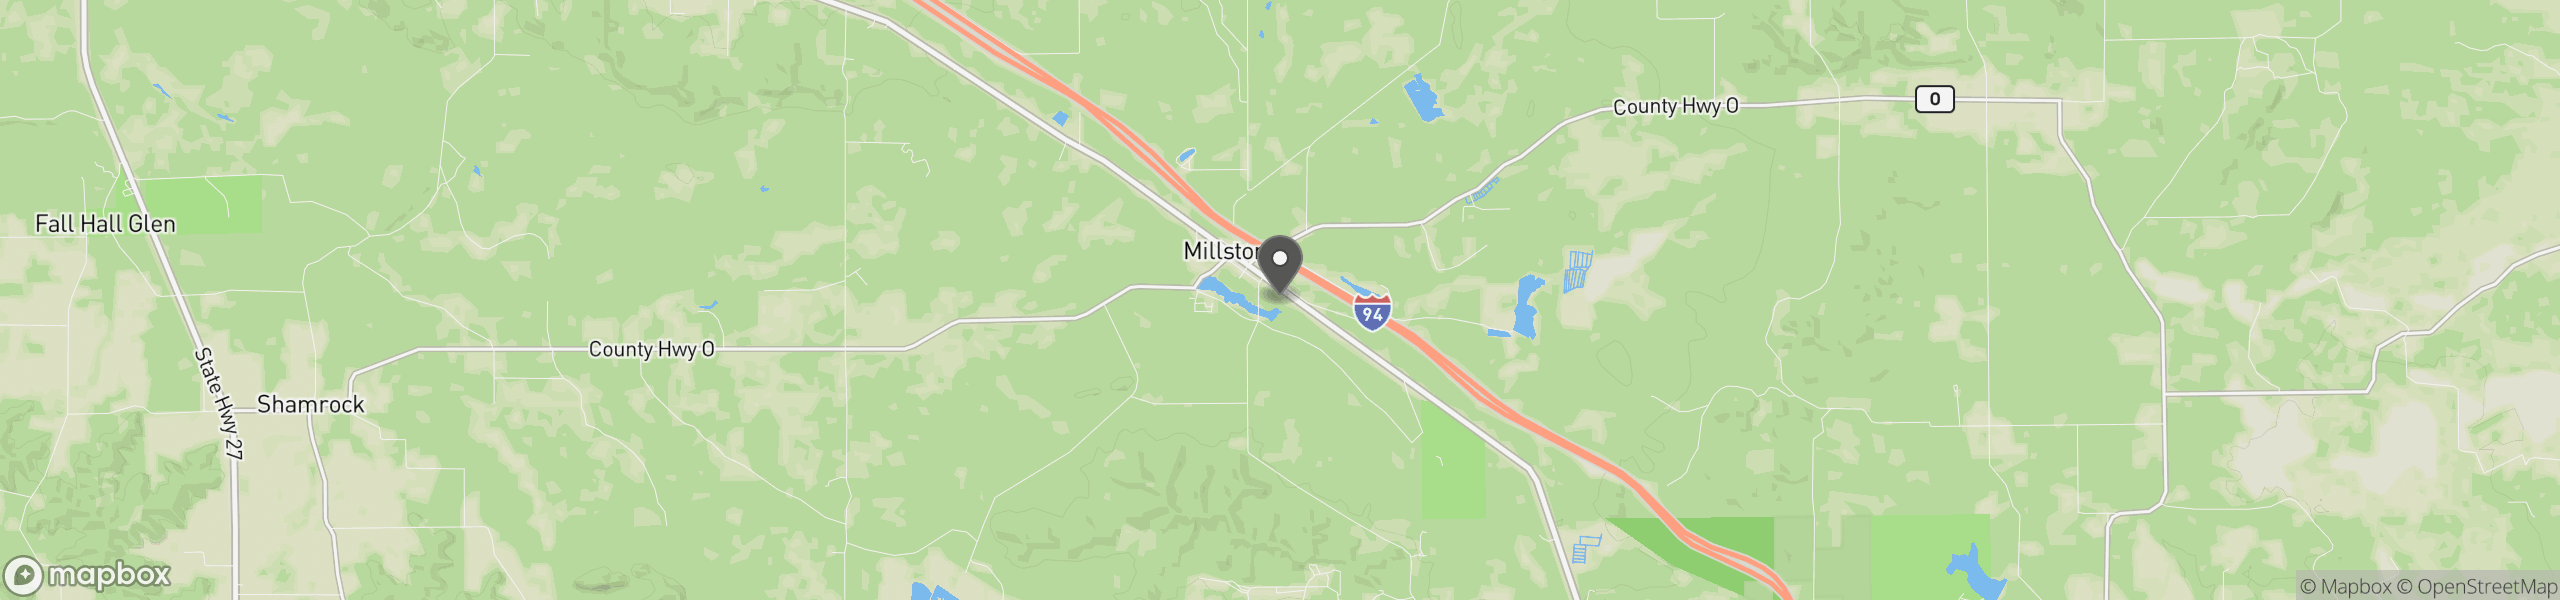 Millston, WI 54643